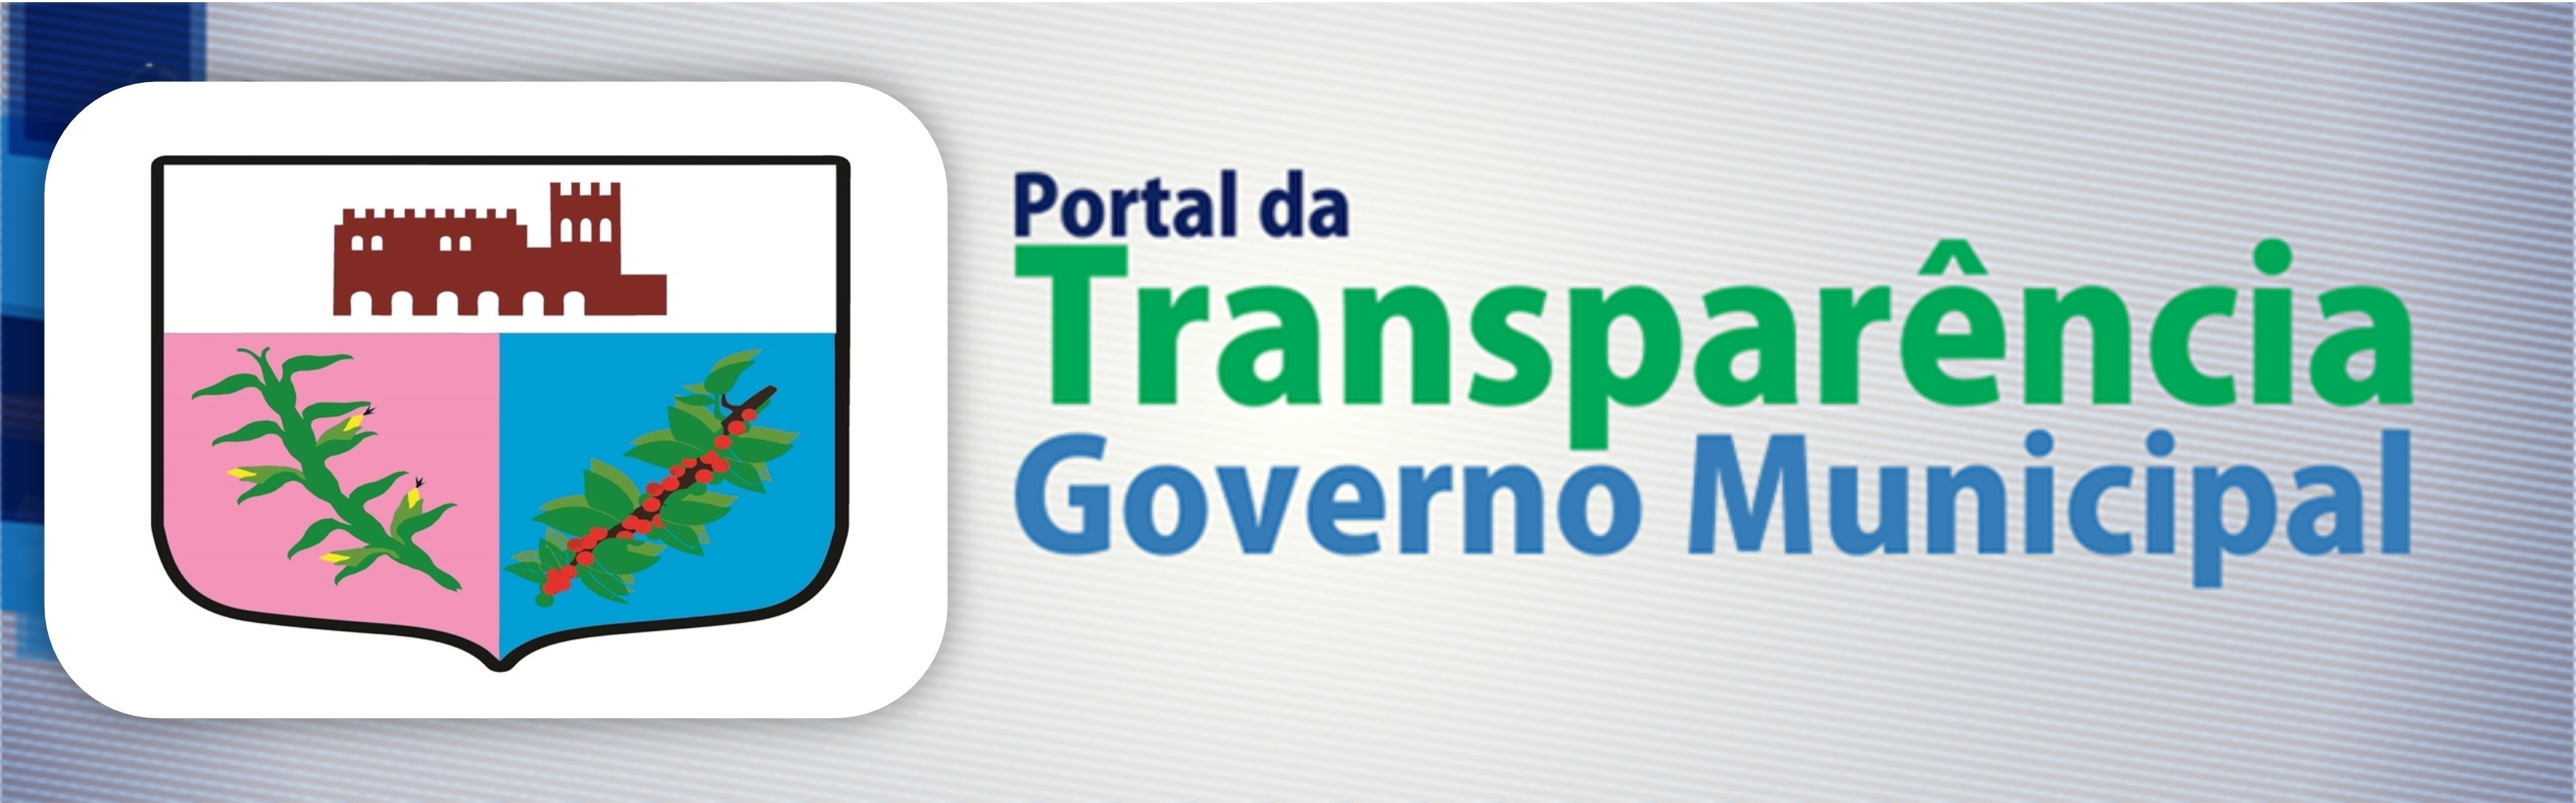 Licitações e Contratos entram em vigor no portal da transparência municipal